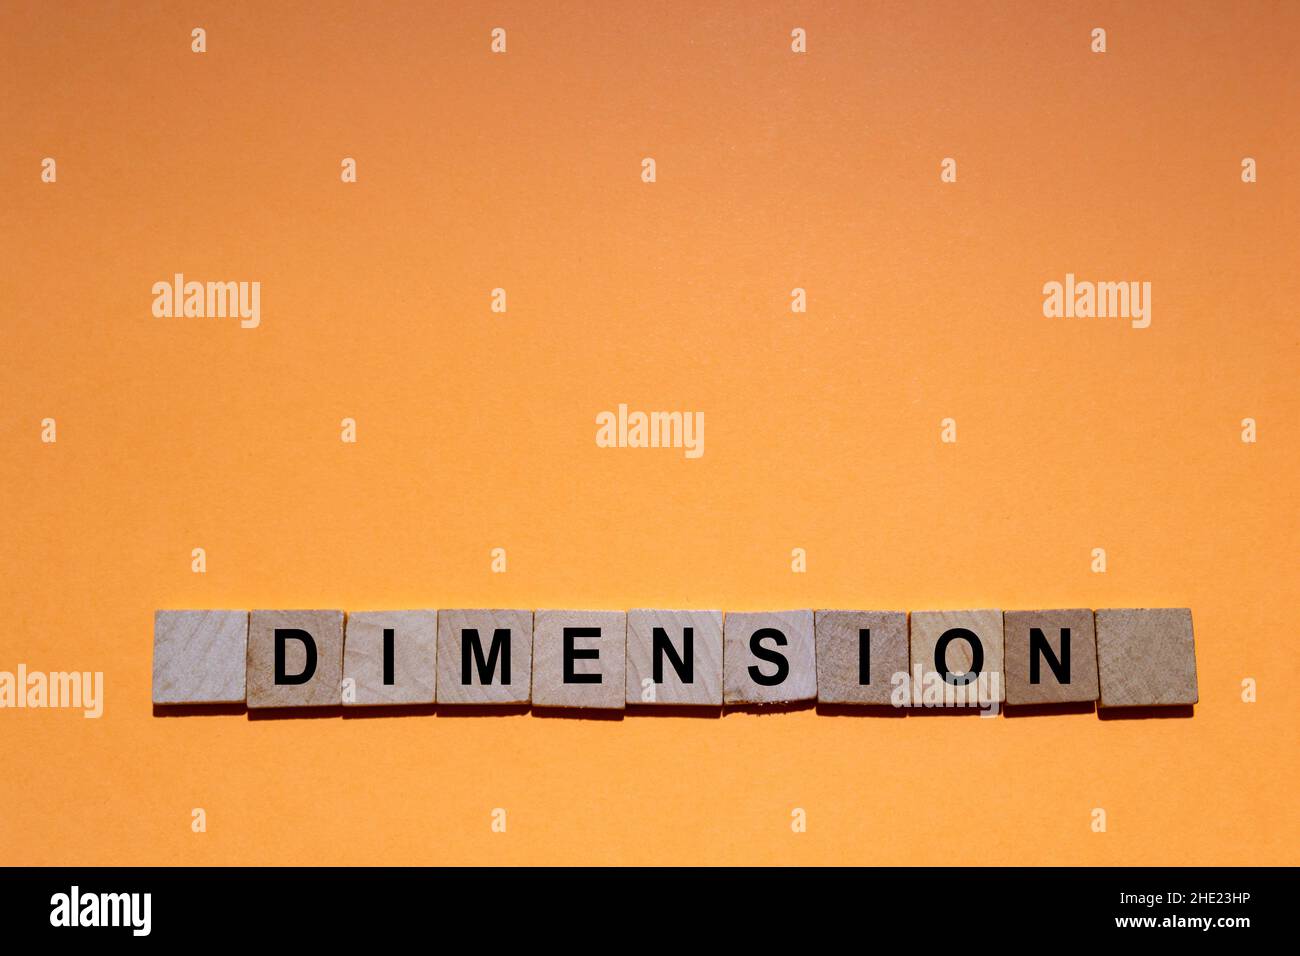 ABMESSUNGEN. Wort auf quadratischen Holzfliesen mit orangefarbenem Hintergrund geschrieben. Horizontale Fotografie. Stockfoto